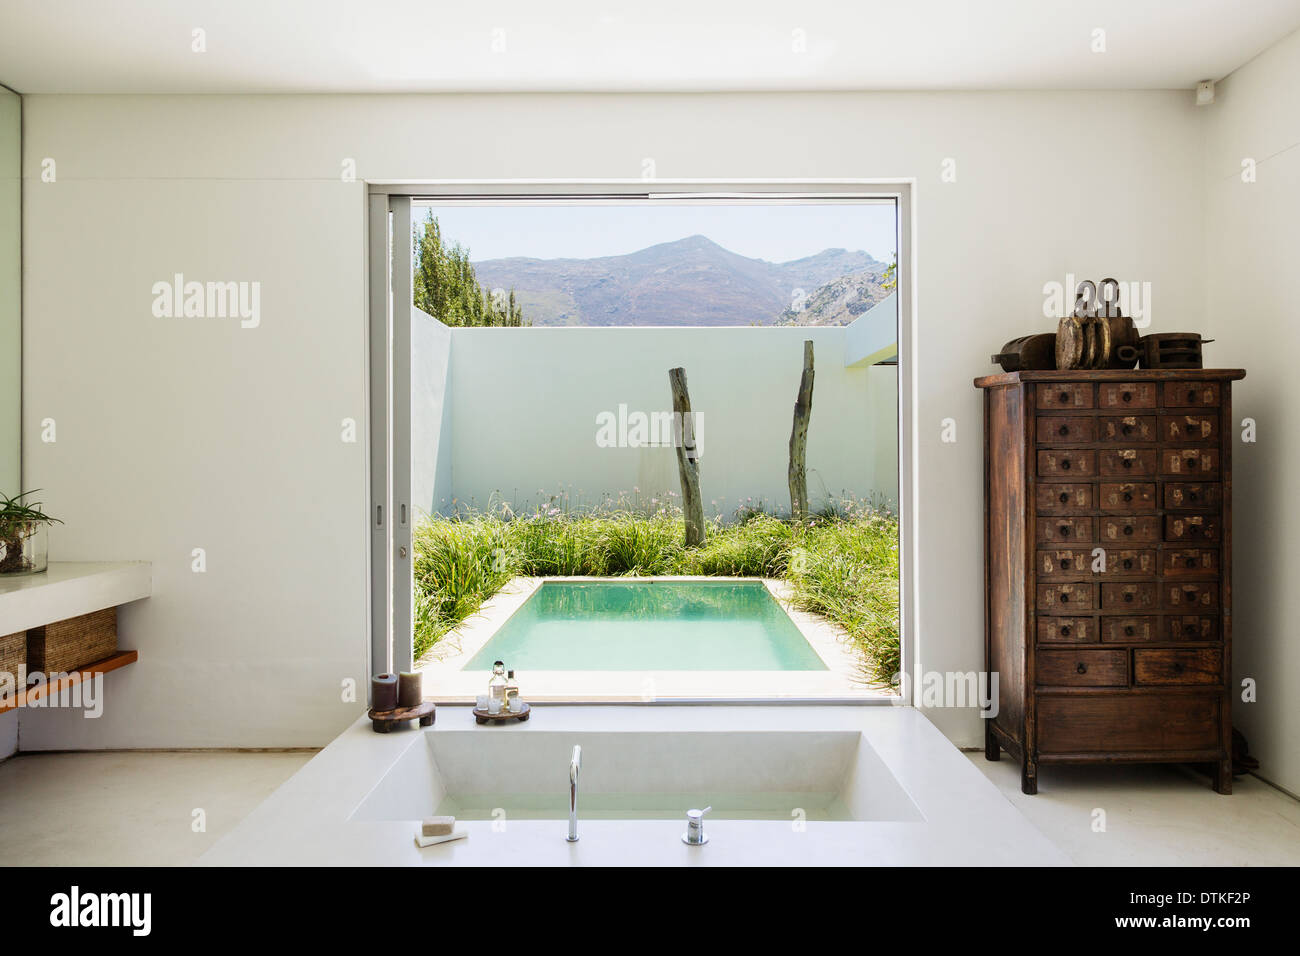 Modern bathroom overlooking luxury soaking pool Stock Photo